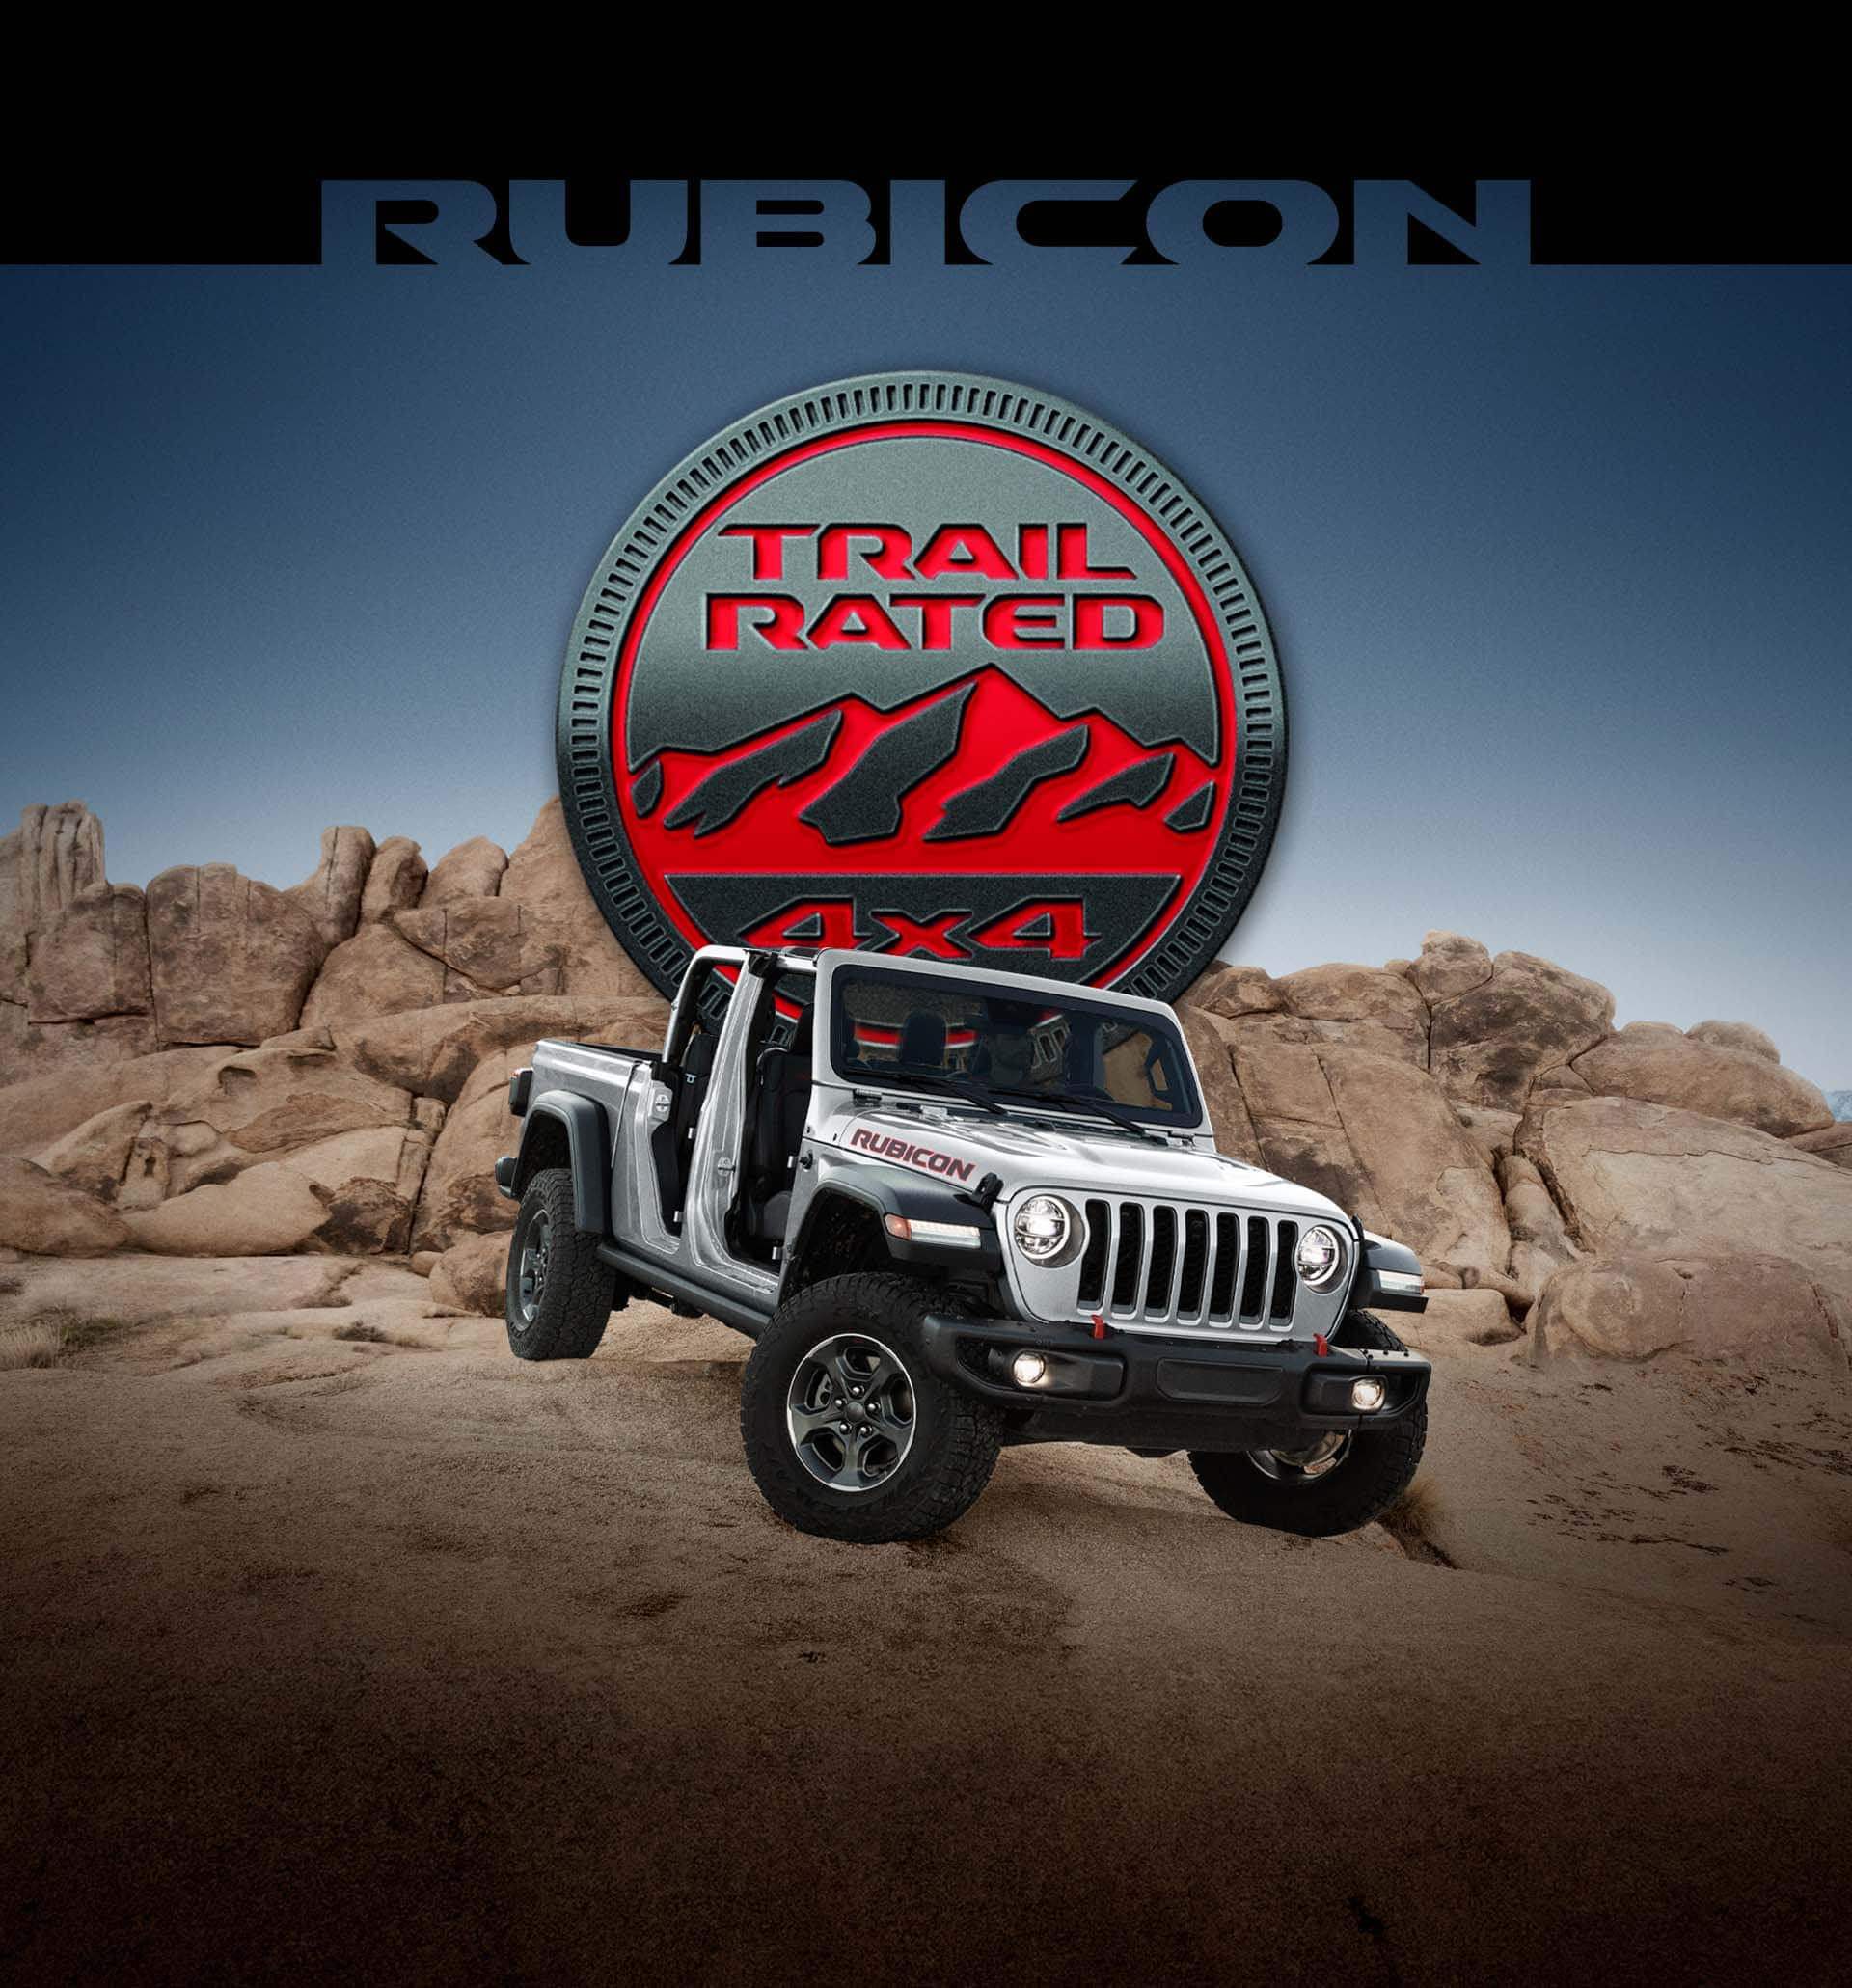 Rubicon. Una Jeep Gladiator Rubicon 2022 con las puertas y el techo extraídos, que comienza a descender por una colina rocosa, con el logotipo de Trail Rated 4x4 superpuesto.